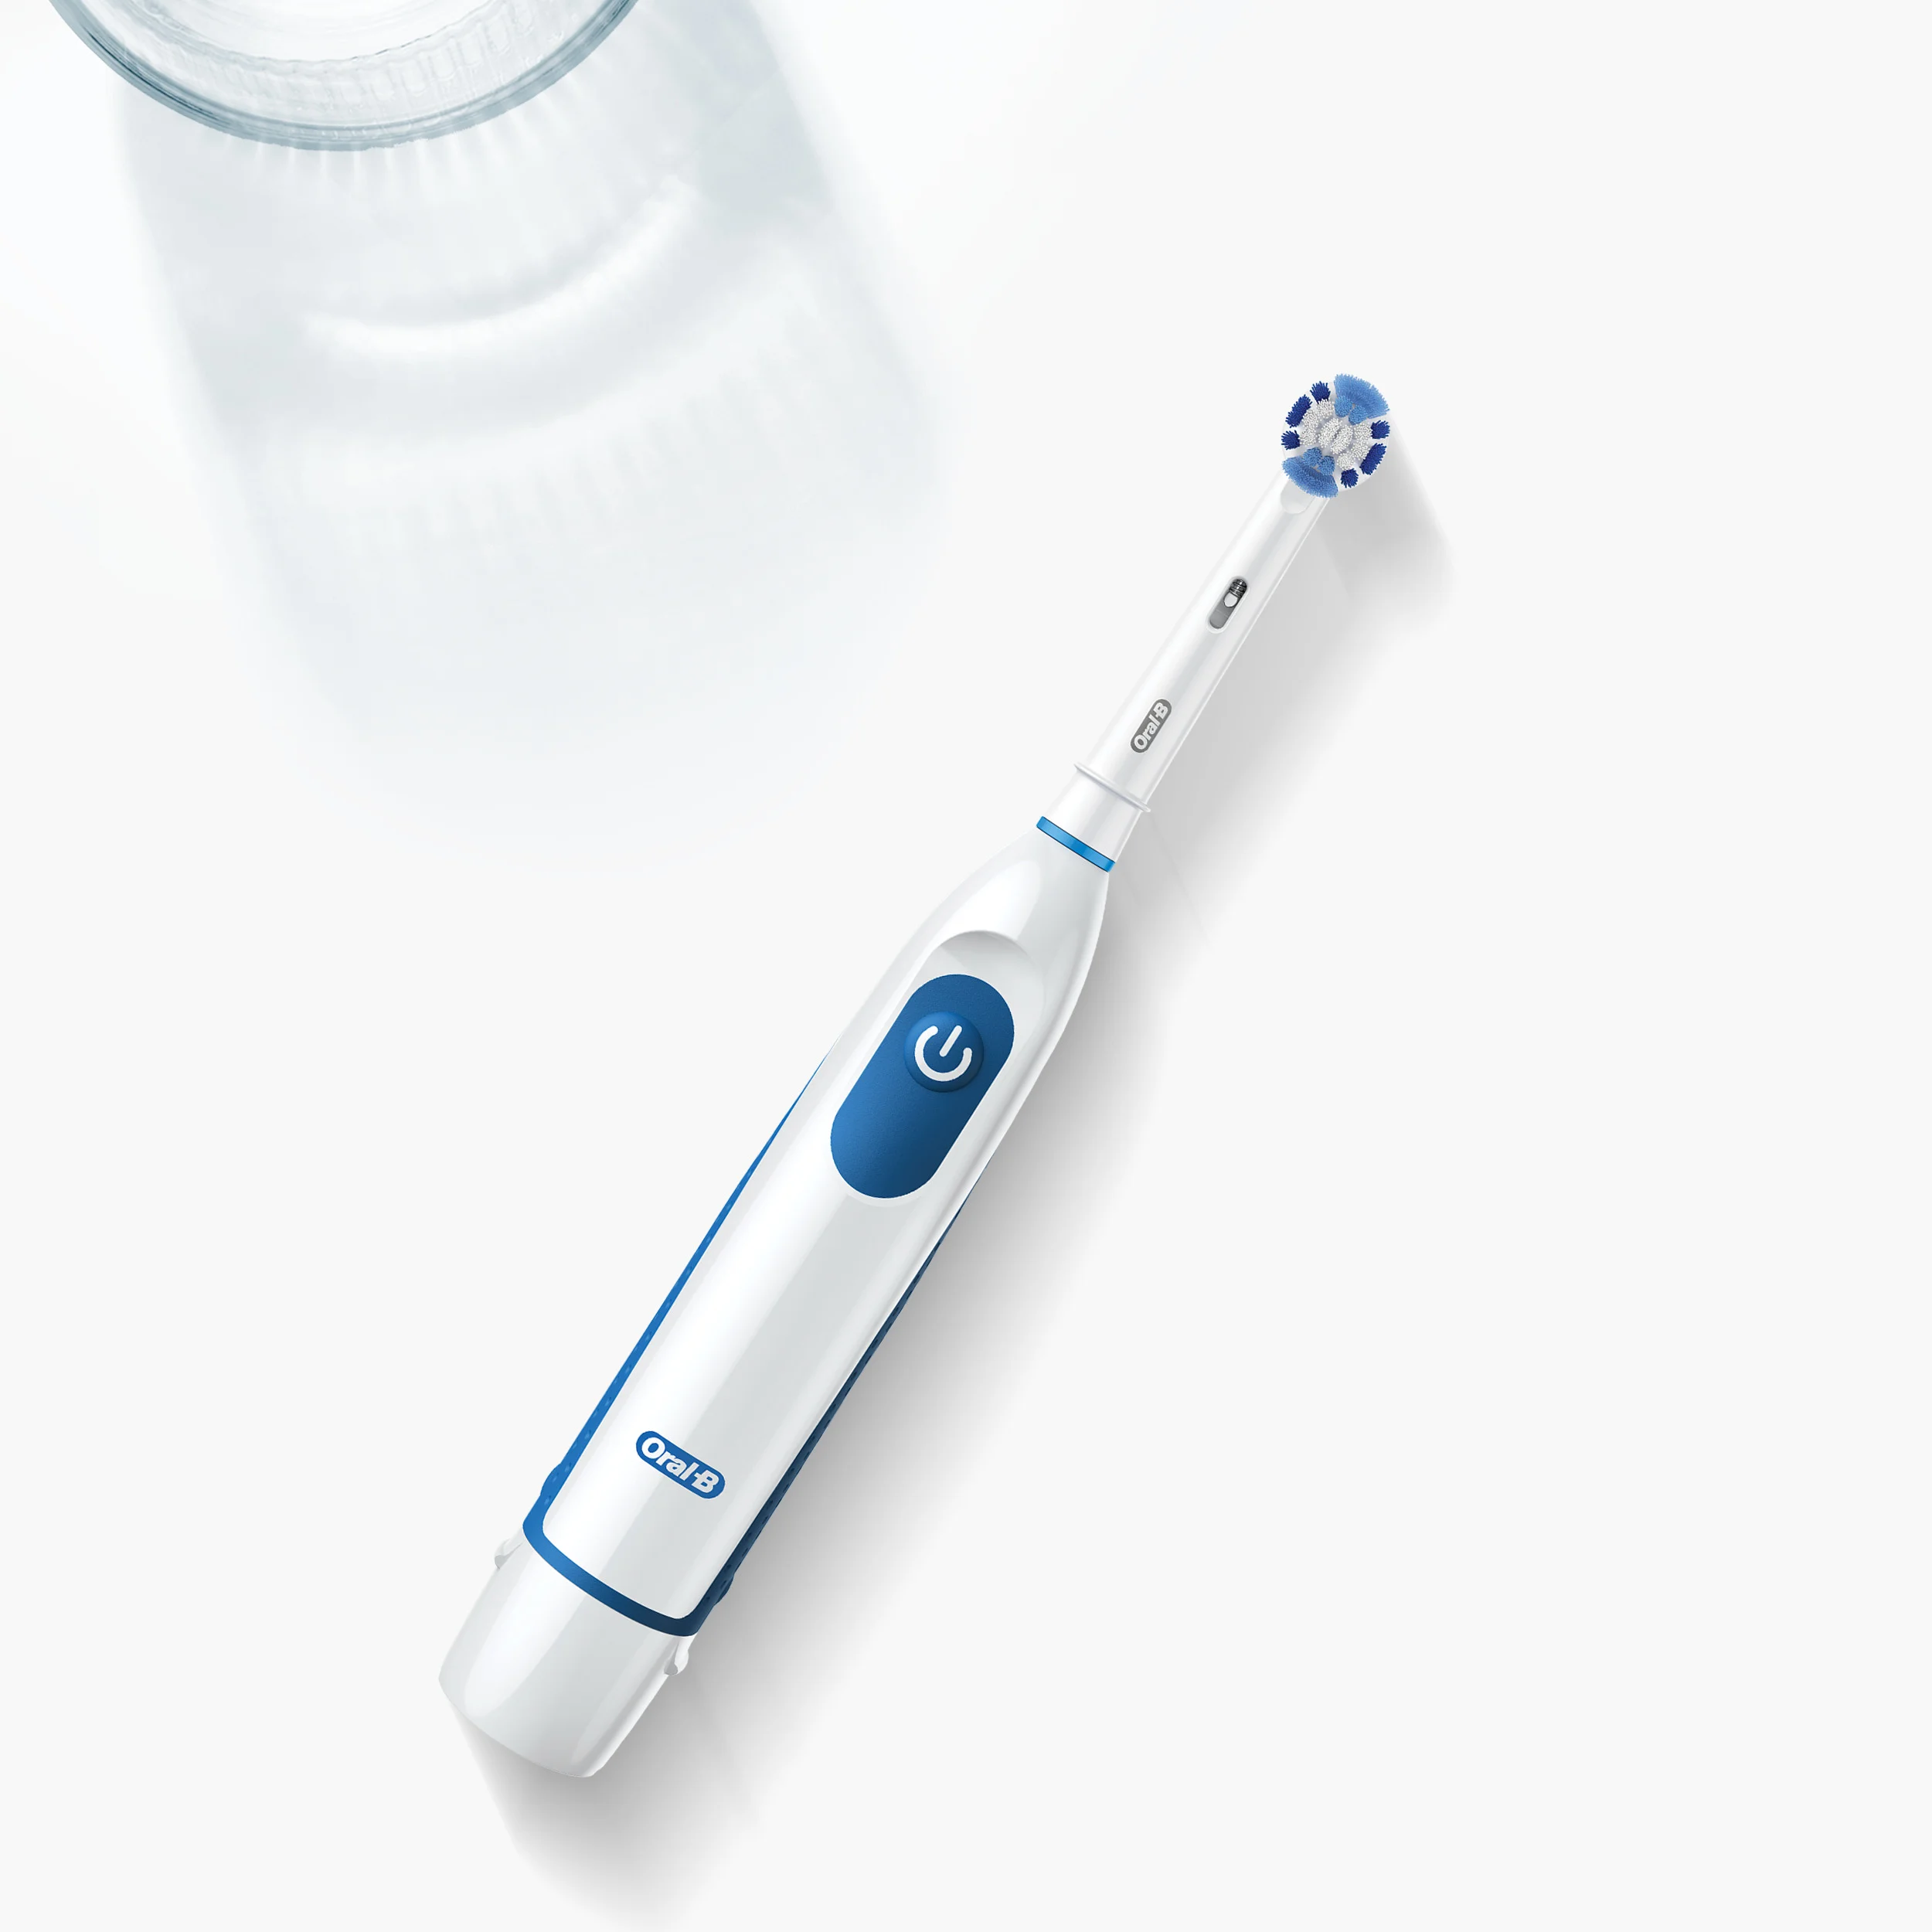 Cepillos dentales: Cepillo eléctrico Oral-B Professional 1